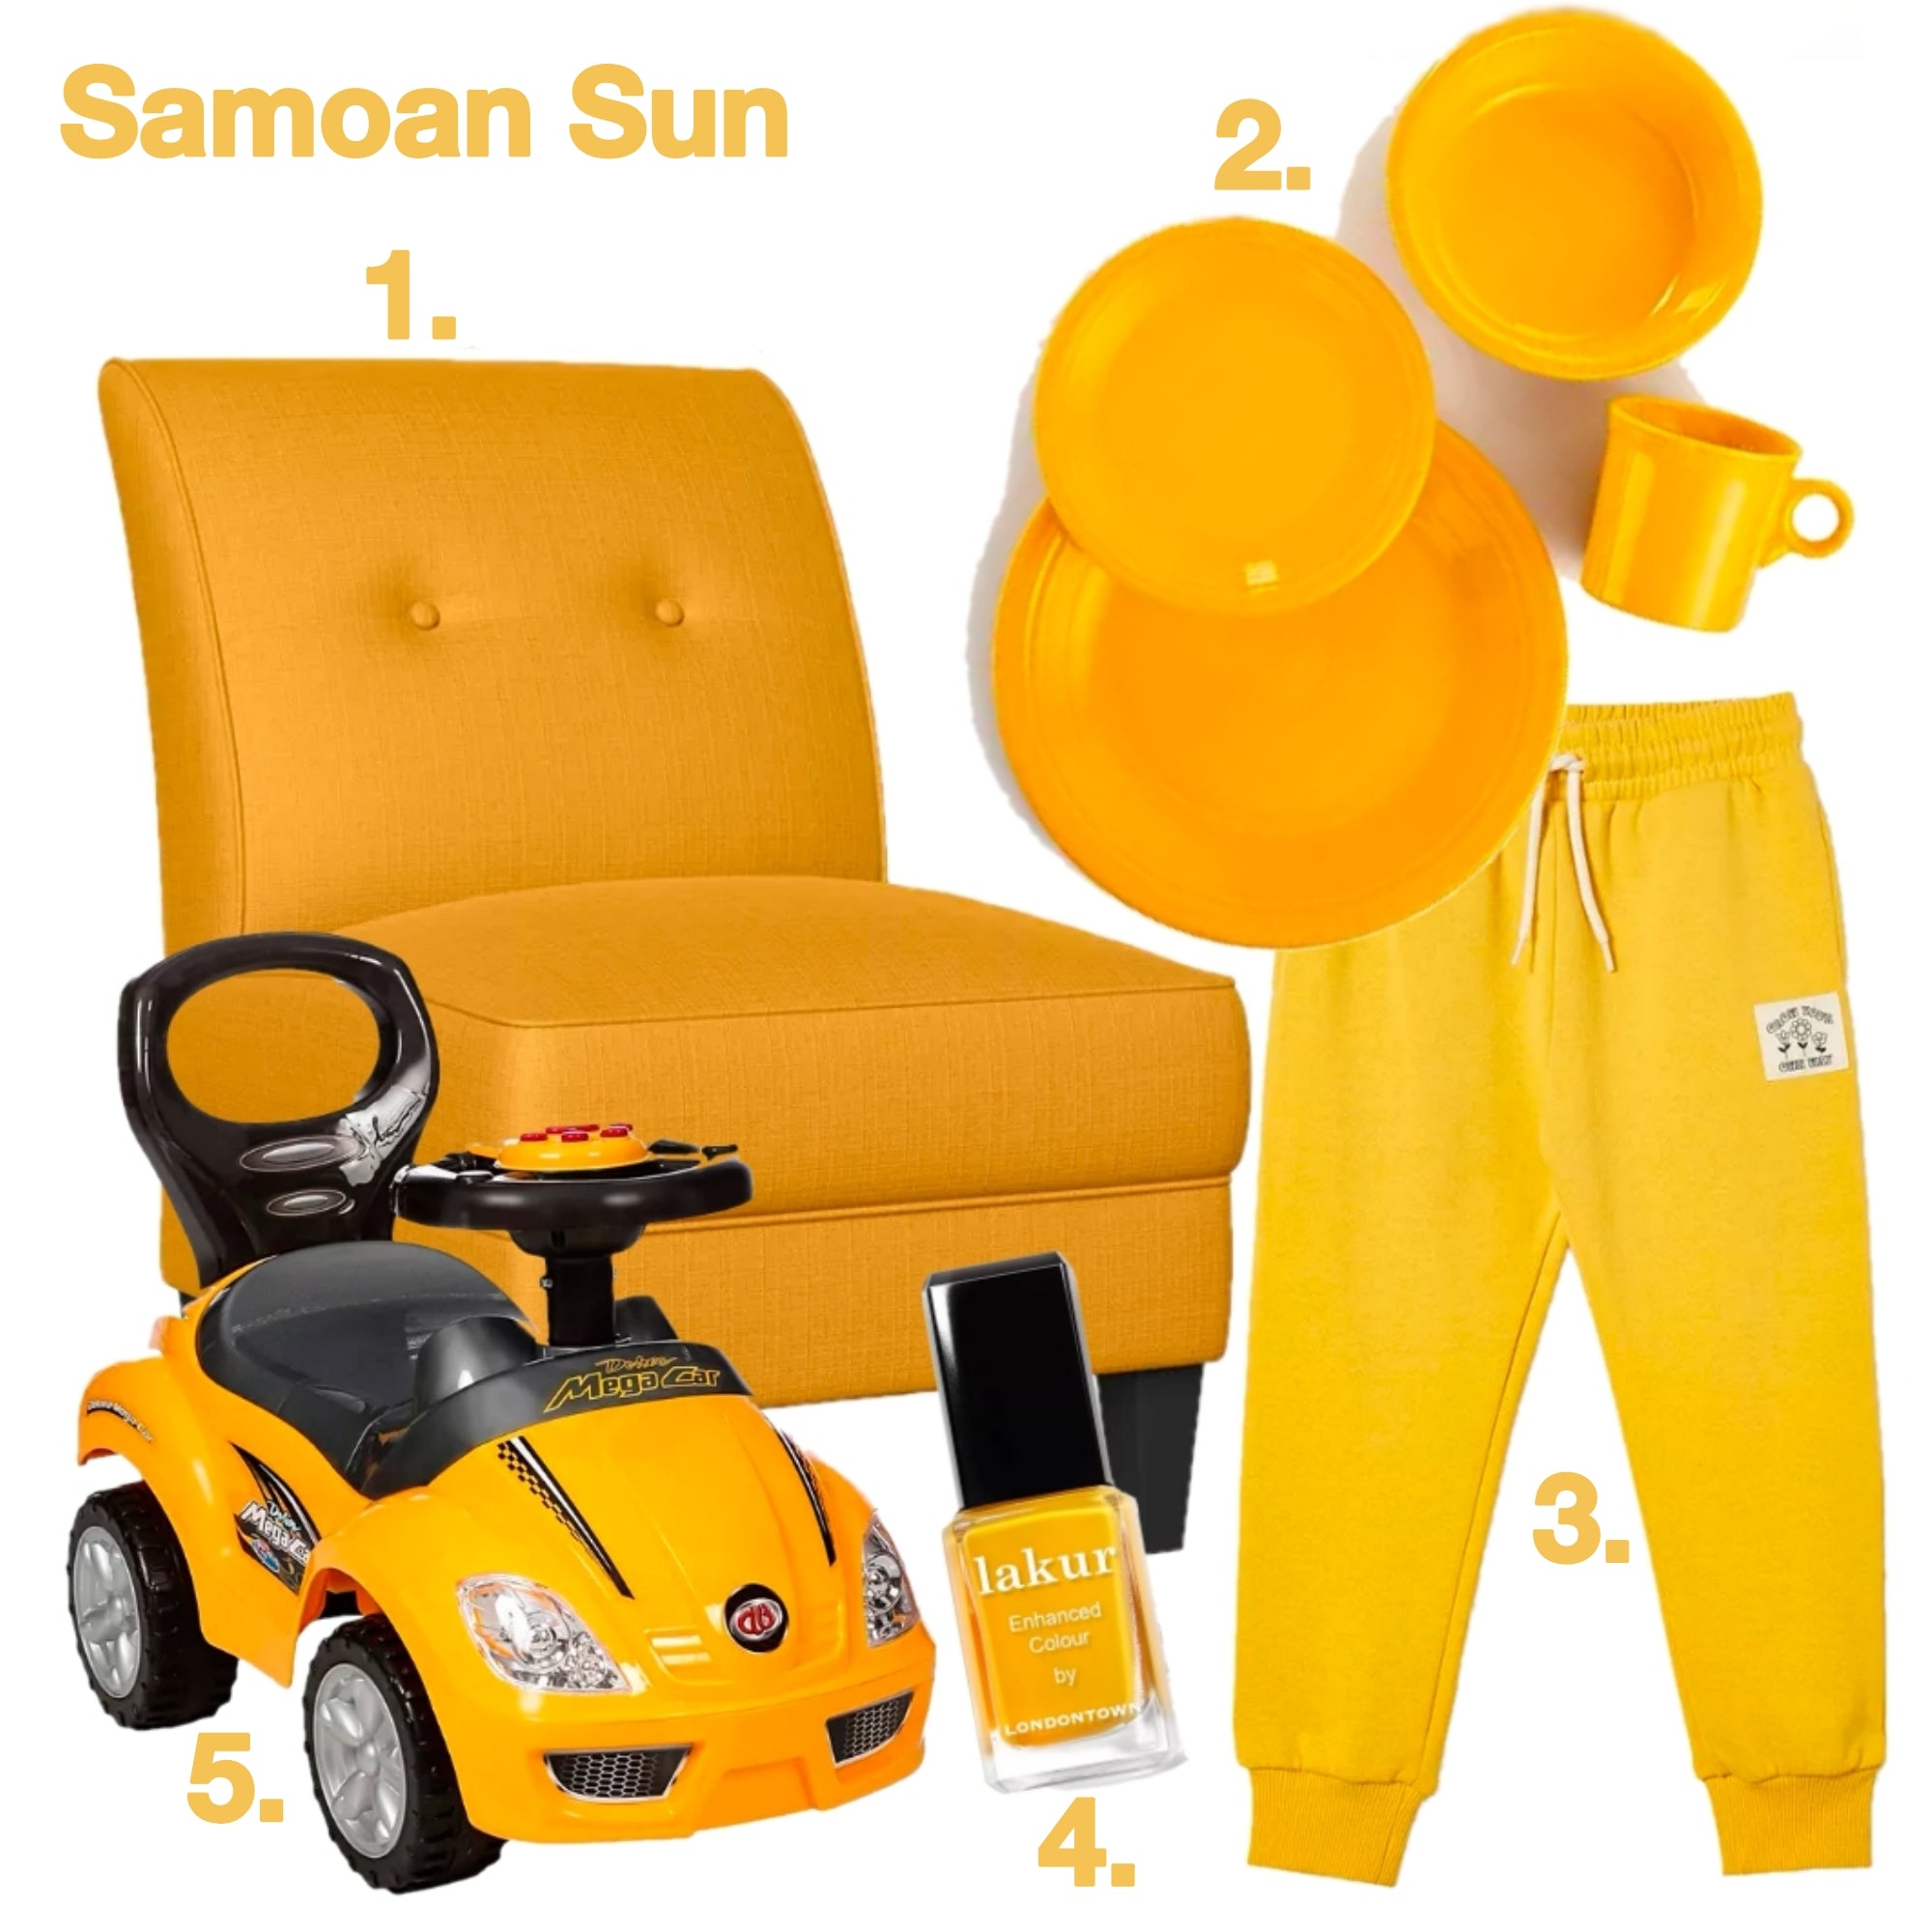 Samoan Sun Holiday Gift Guide